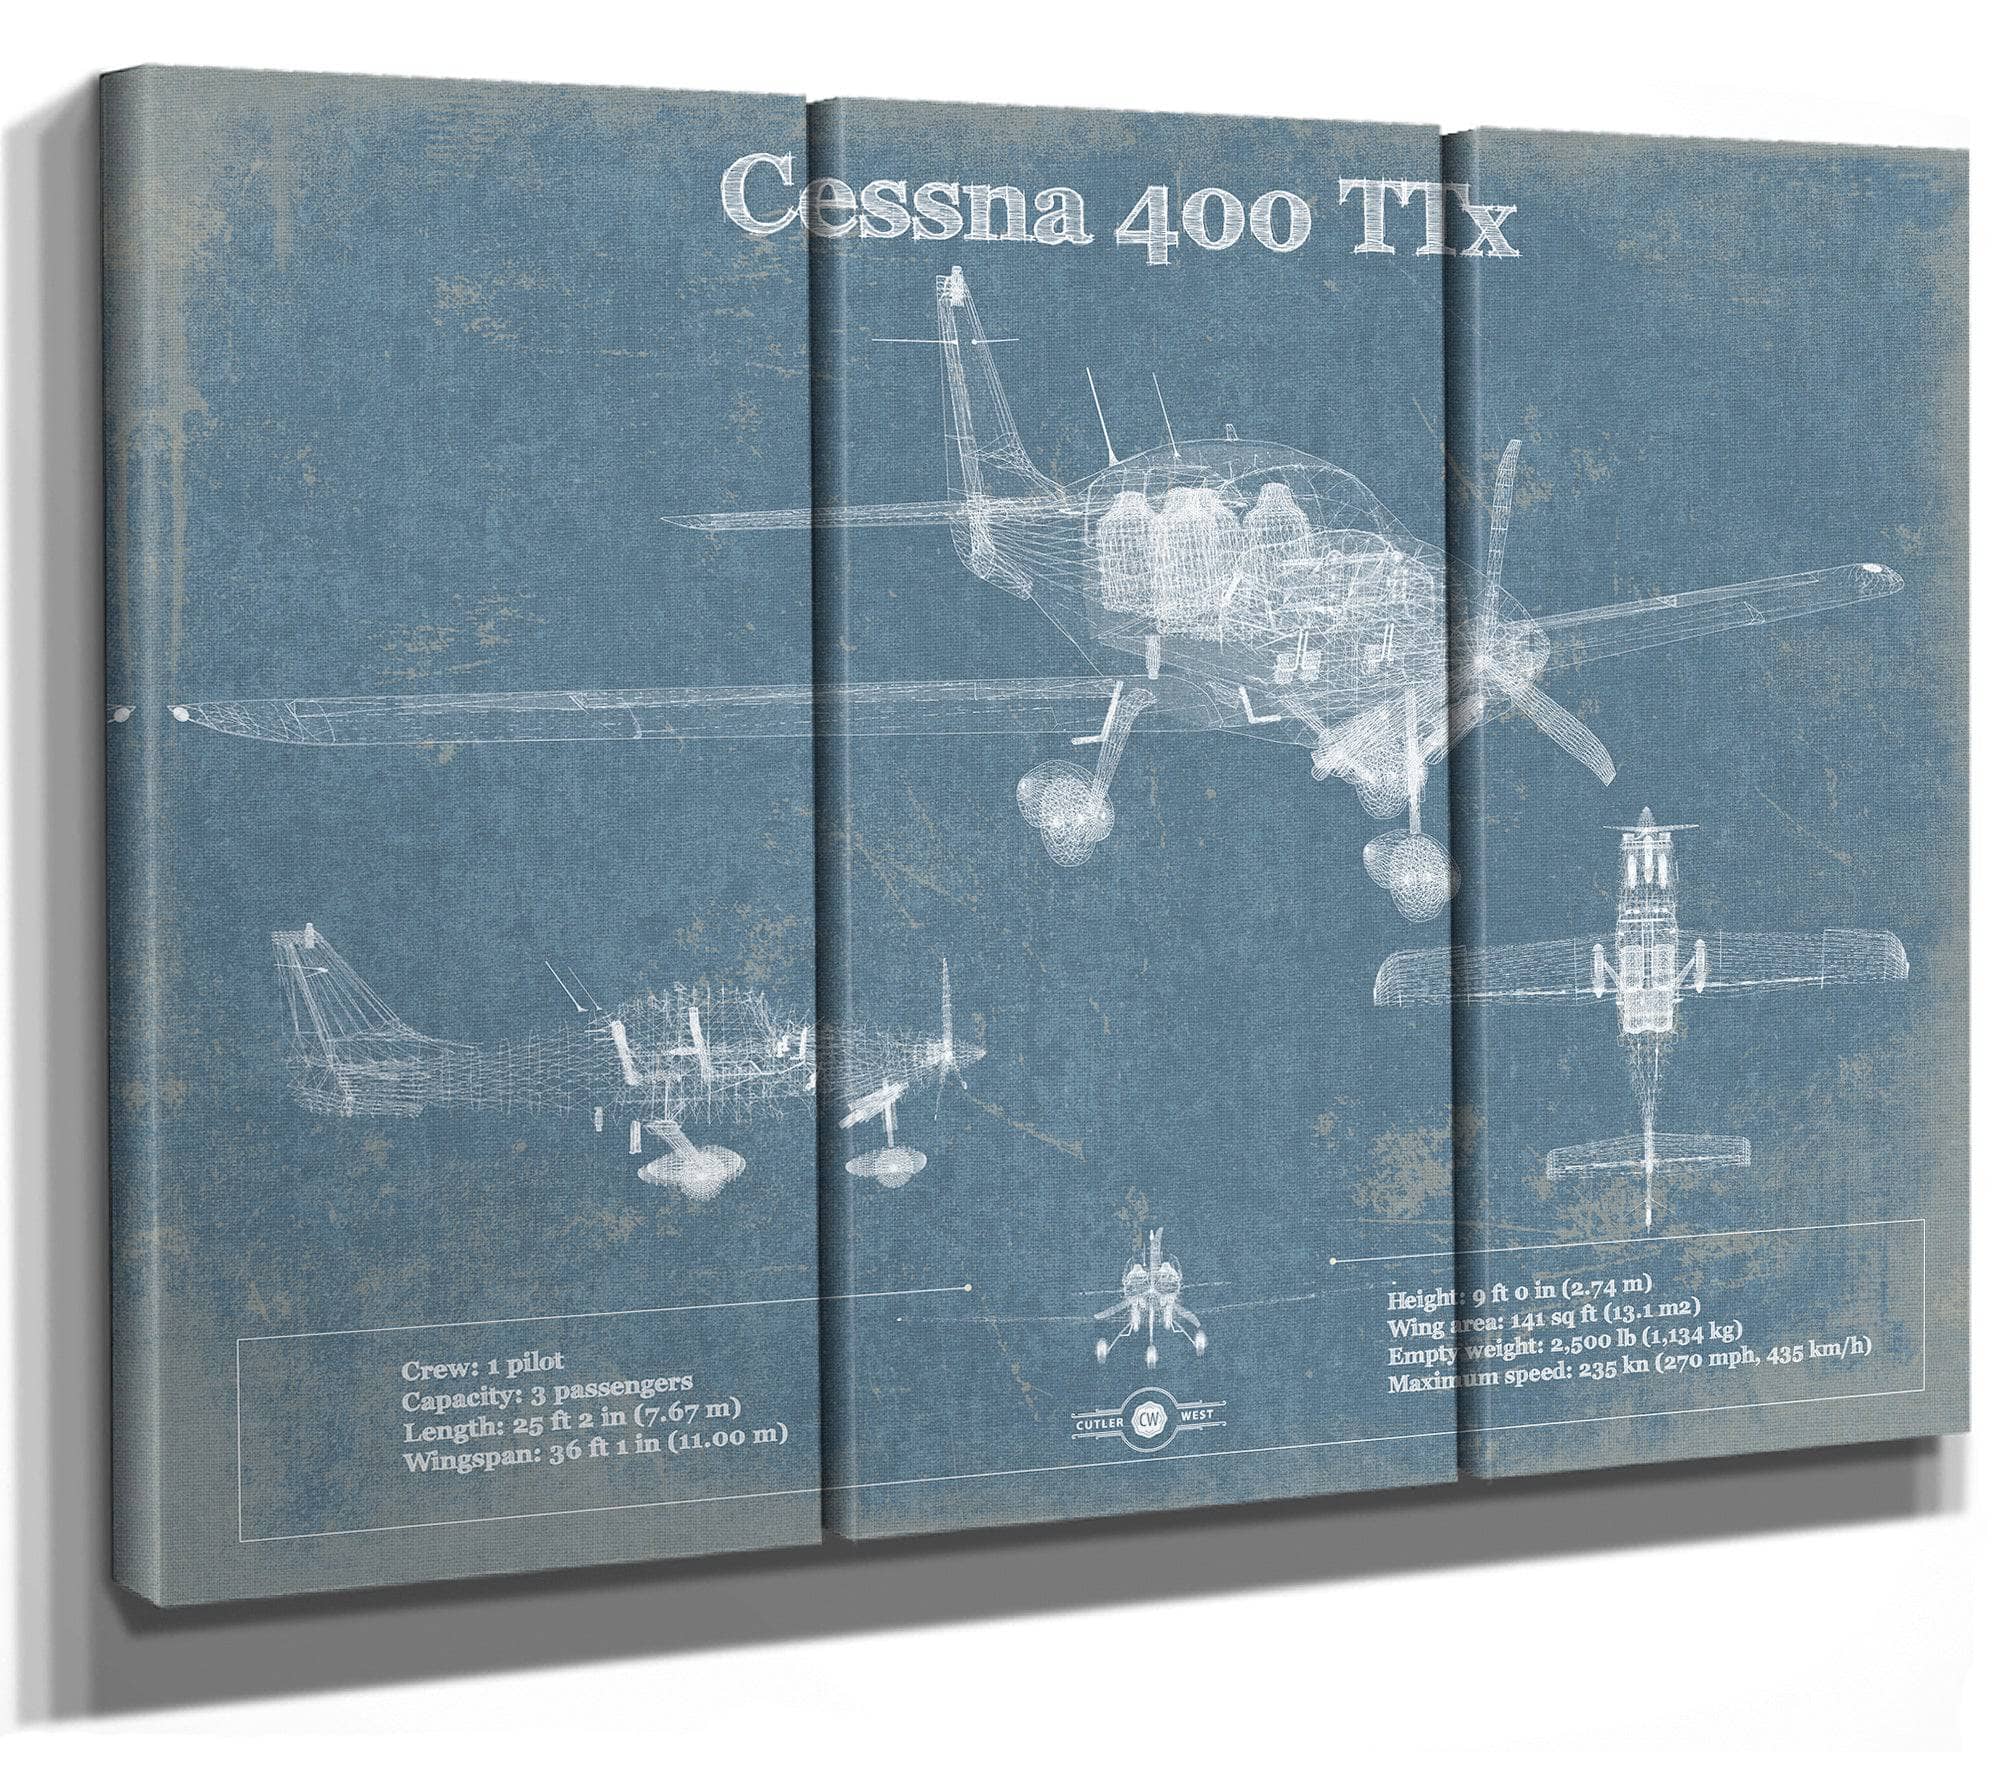 Cessna 400 TTX Original Blueprint Art